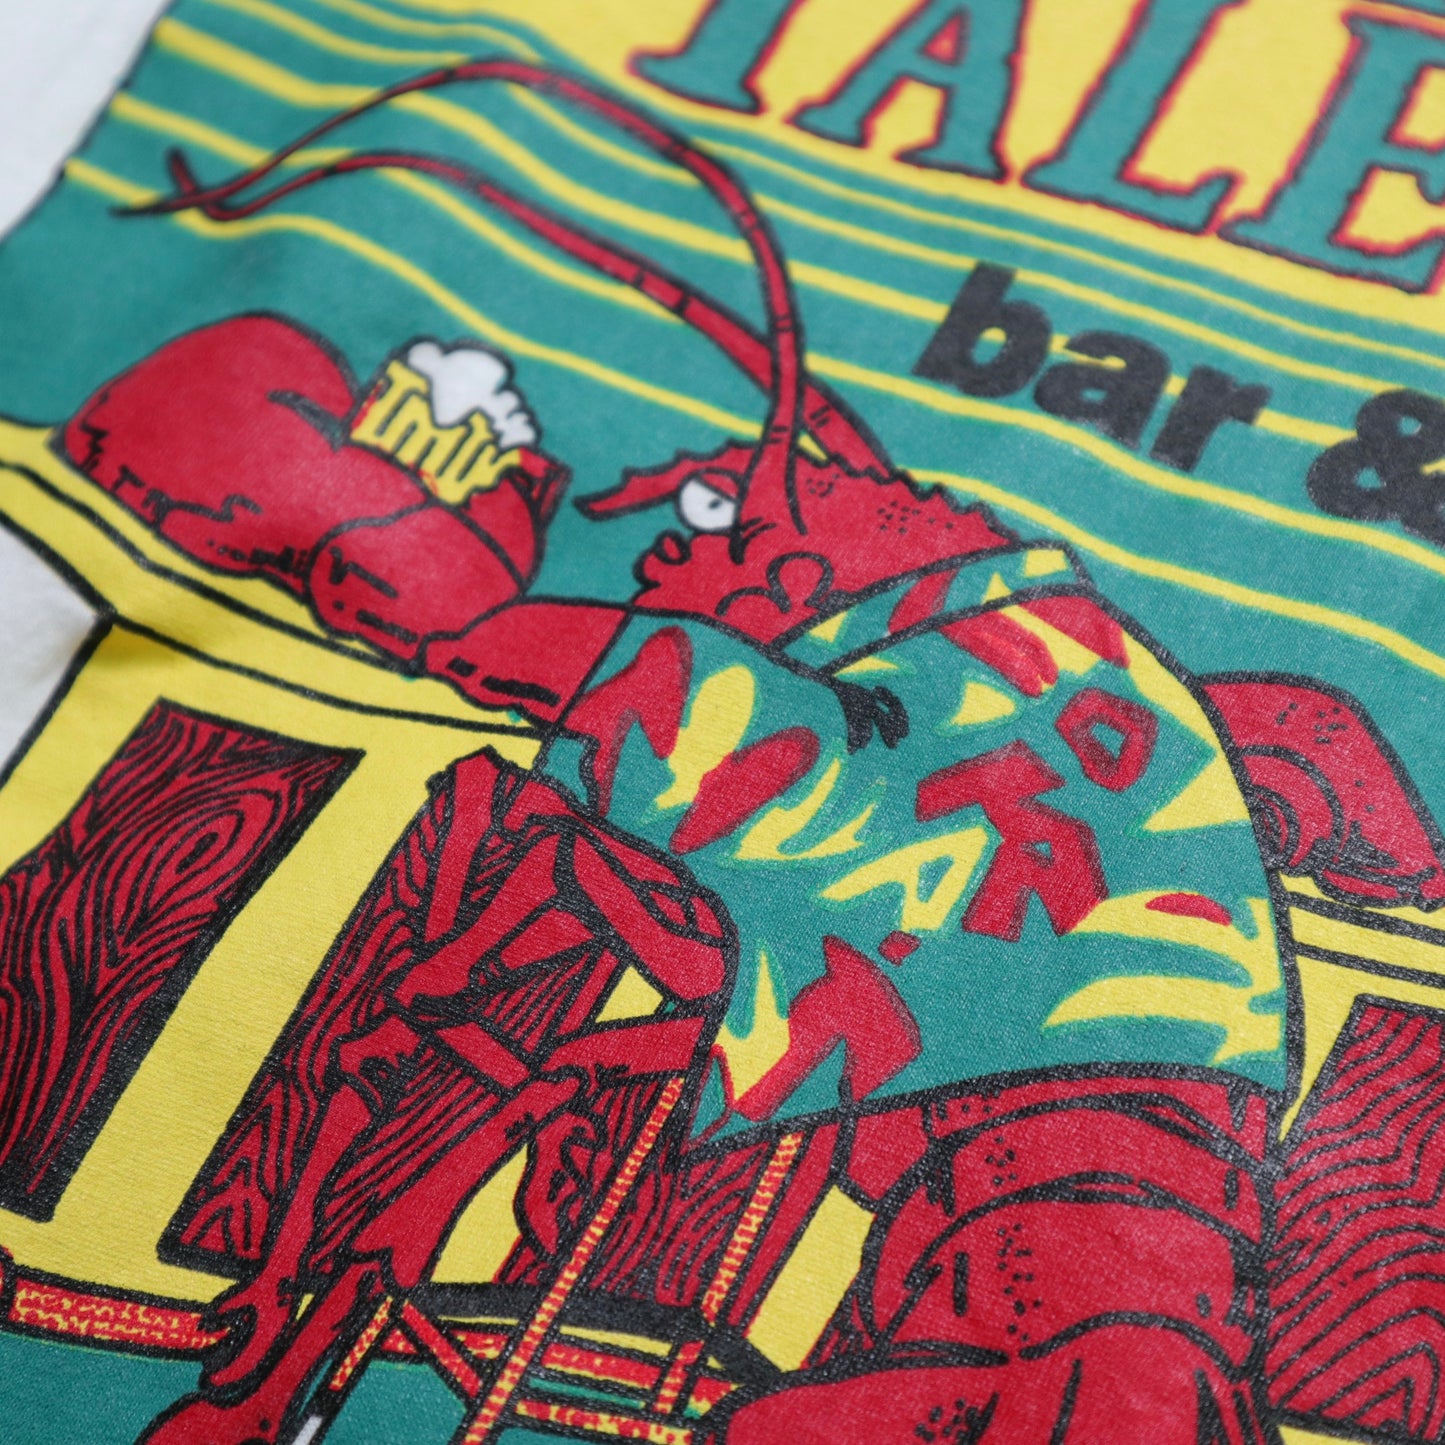 80's Lobster Tales 龍蝦酒吧膠印tee